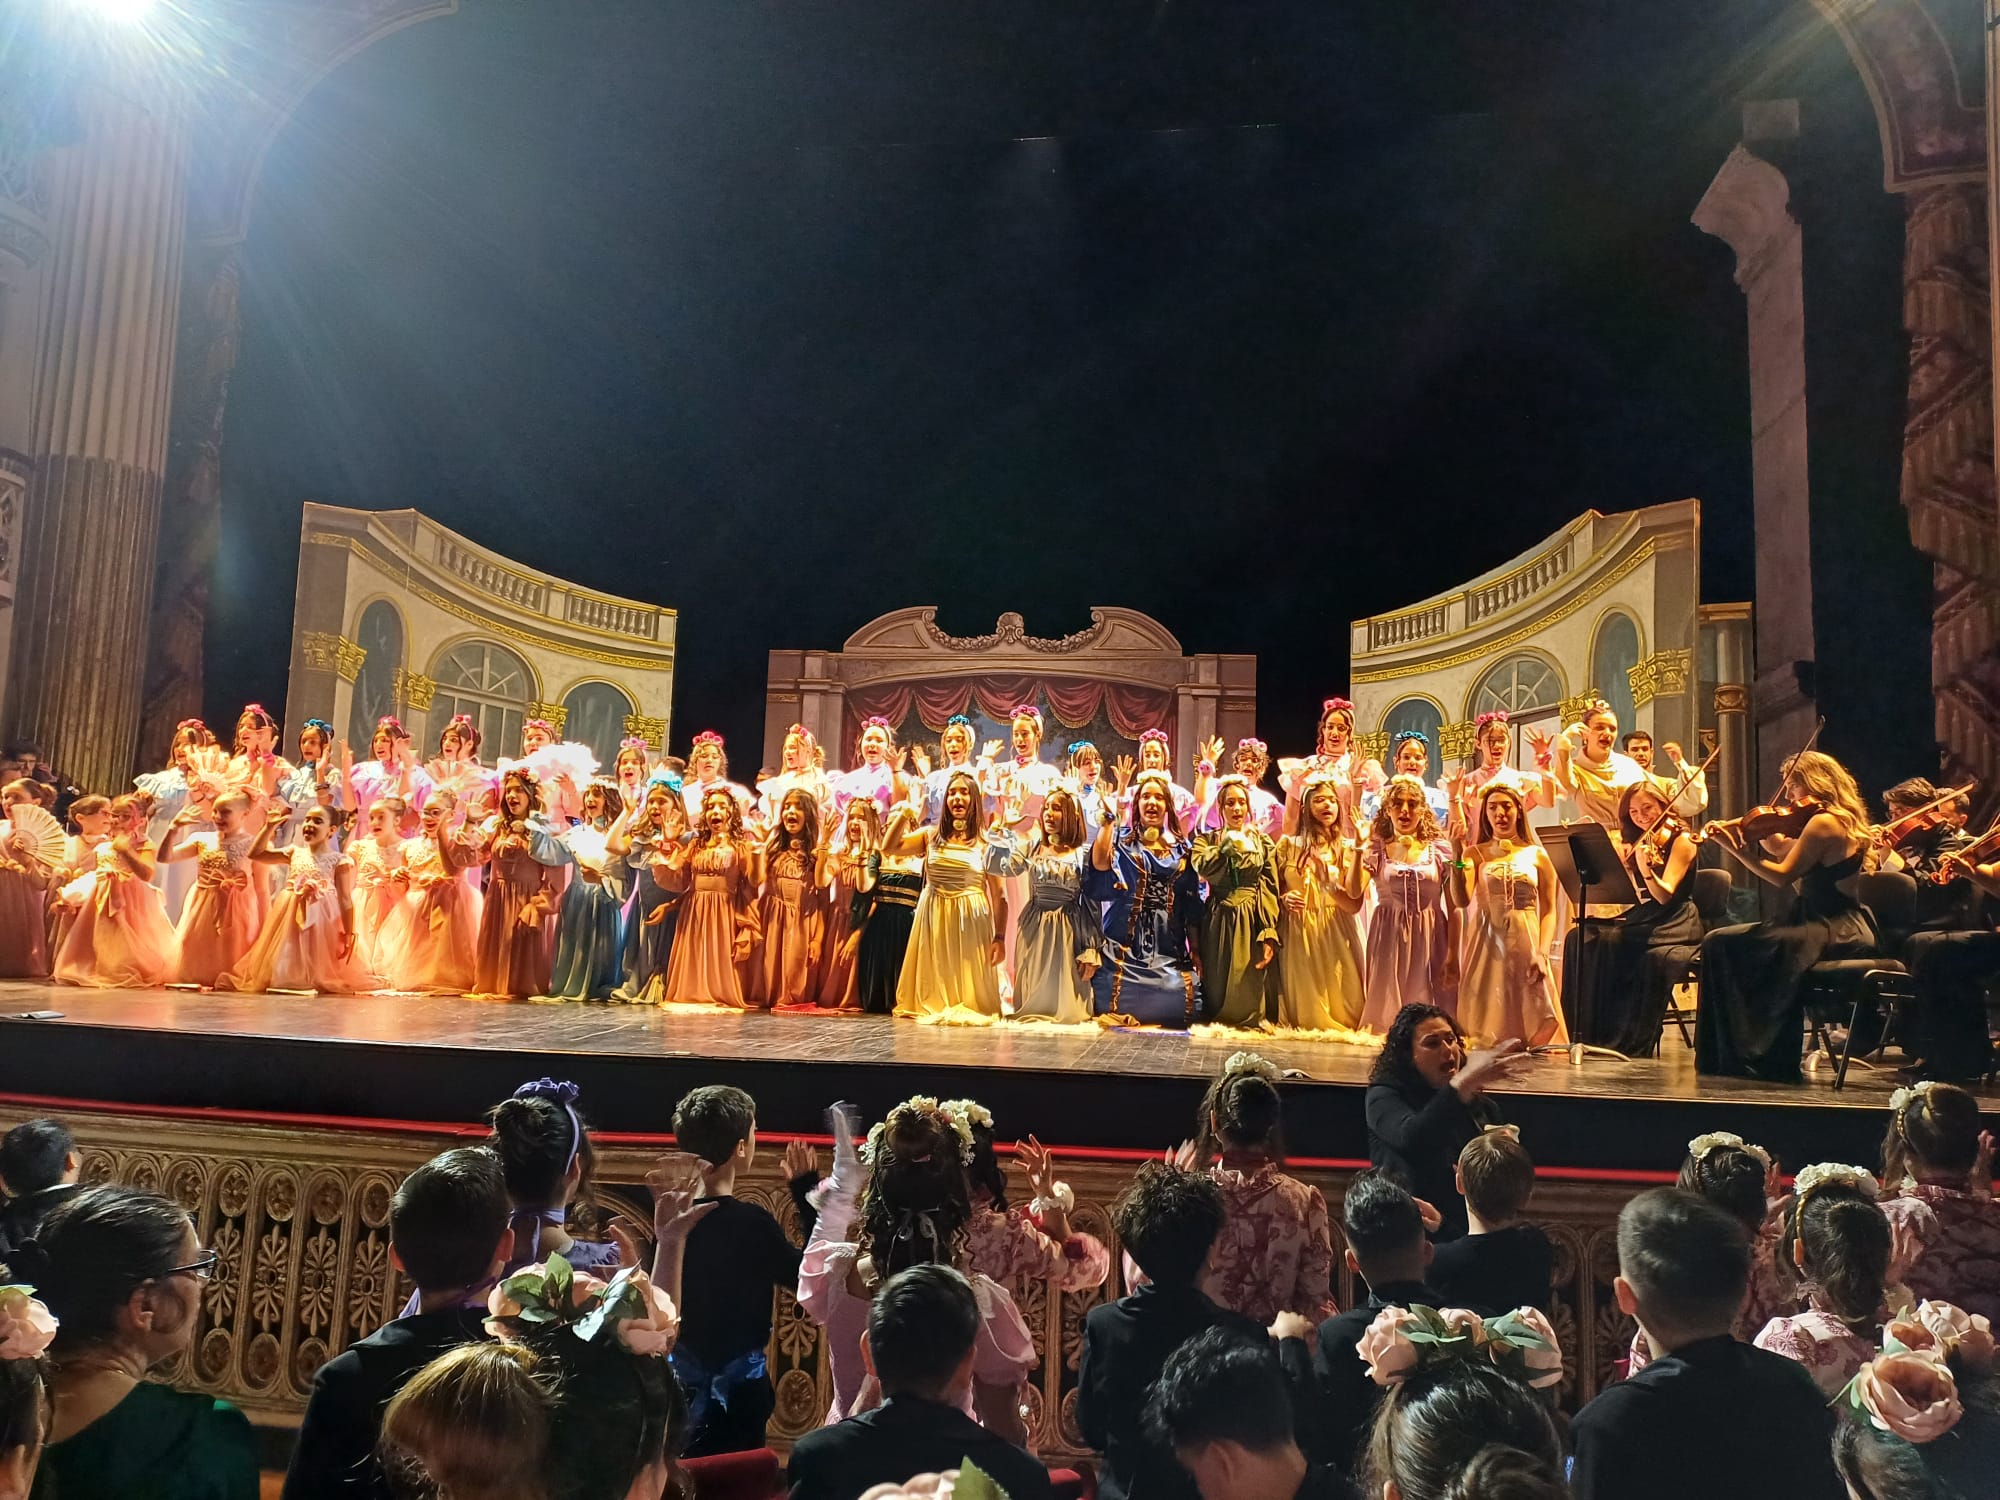 Rappresentazione de “La Traviata” di Giuseppe Verdi, 12 aprile Teatro San Carlo di Napoli– Scuola Secondaria di Primo Grado